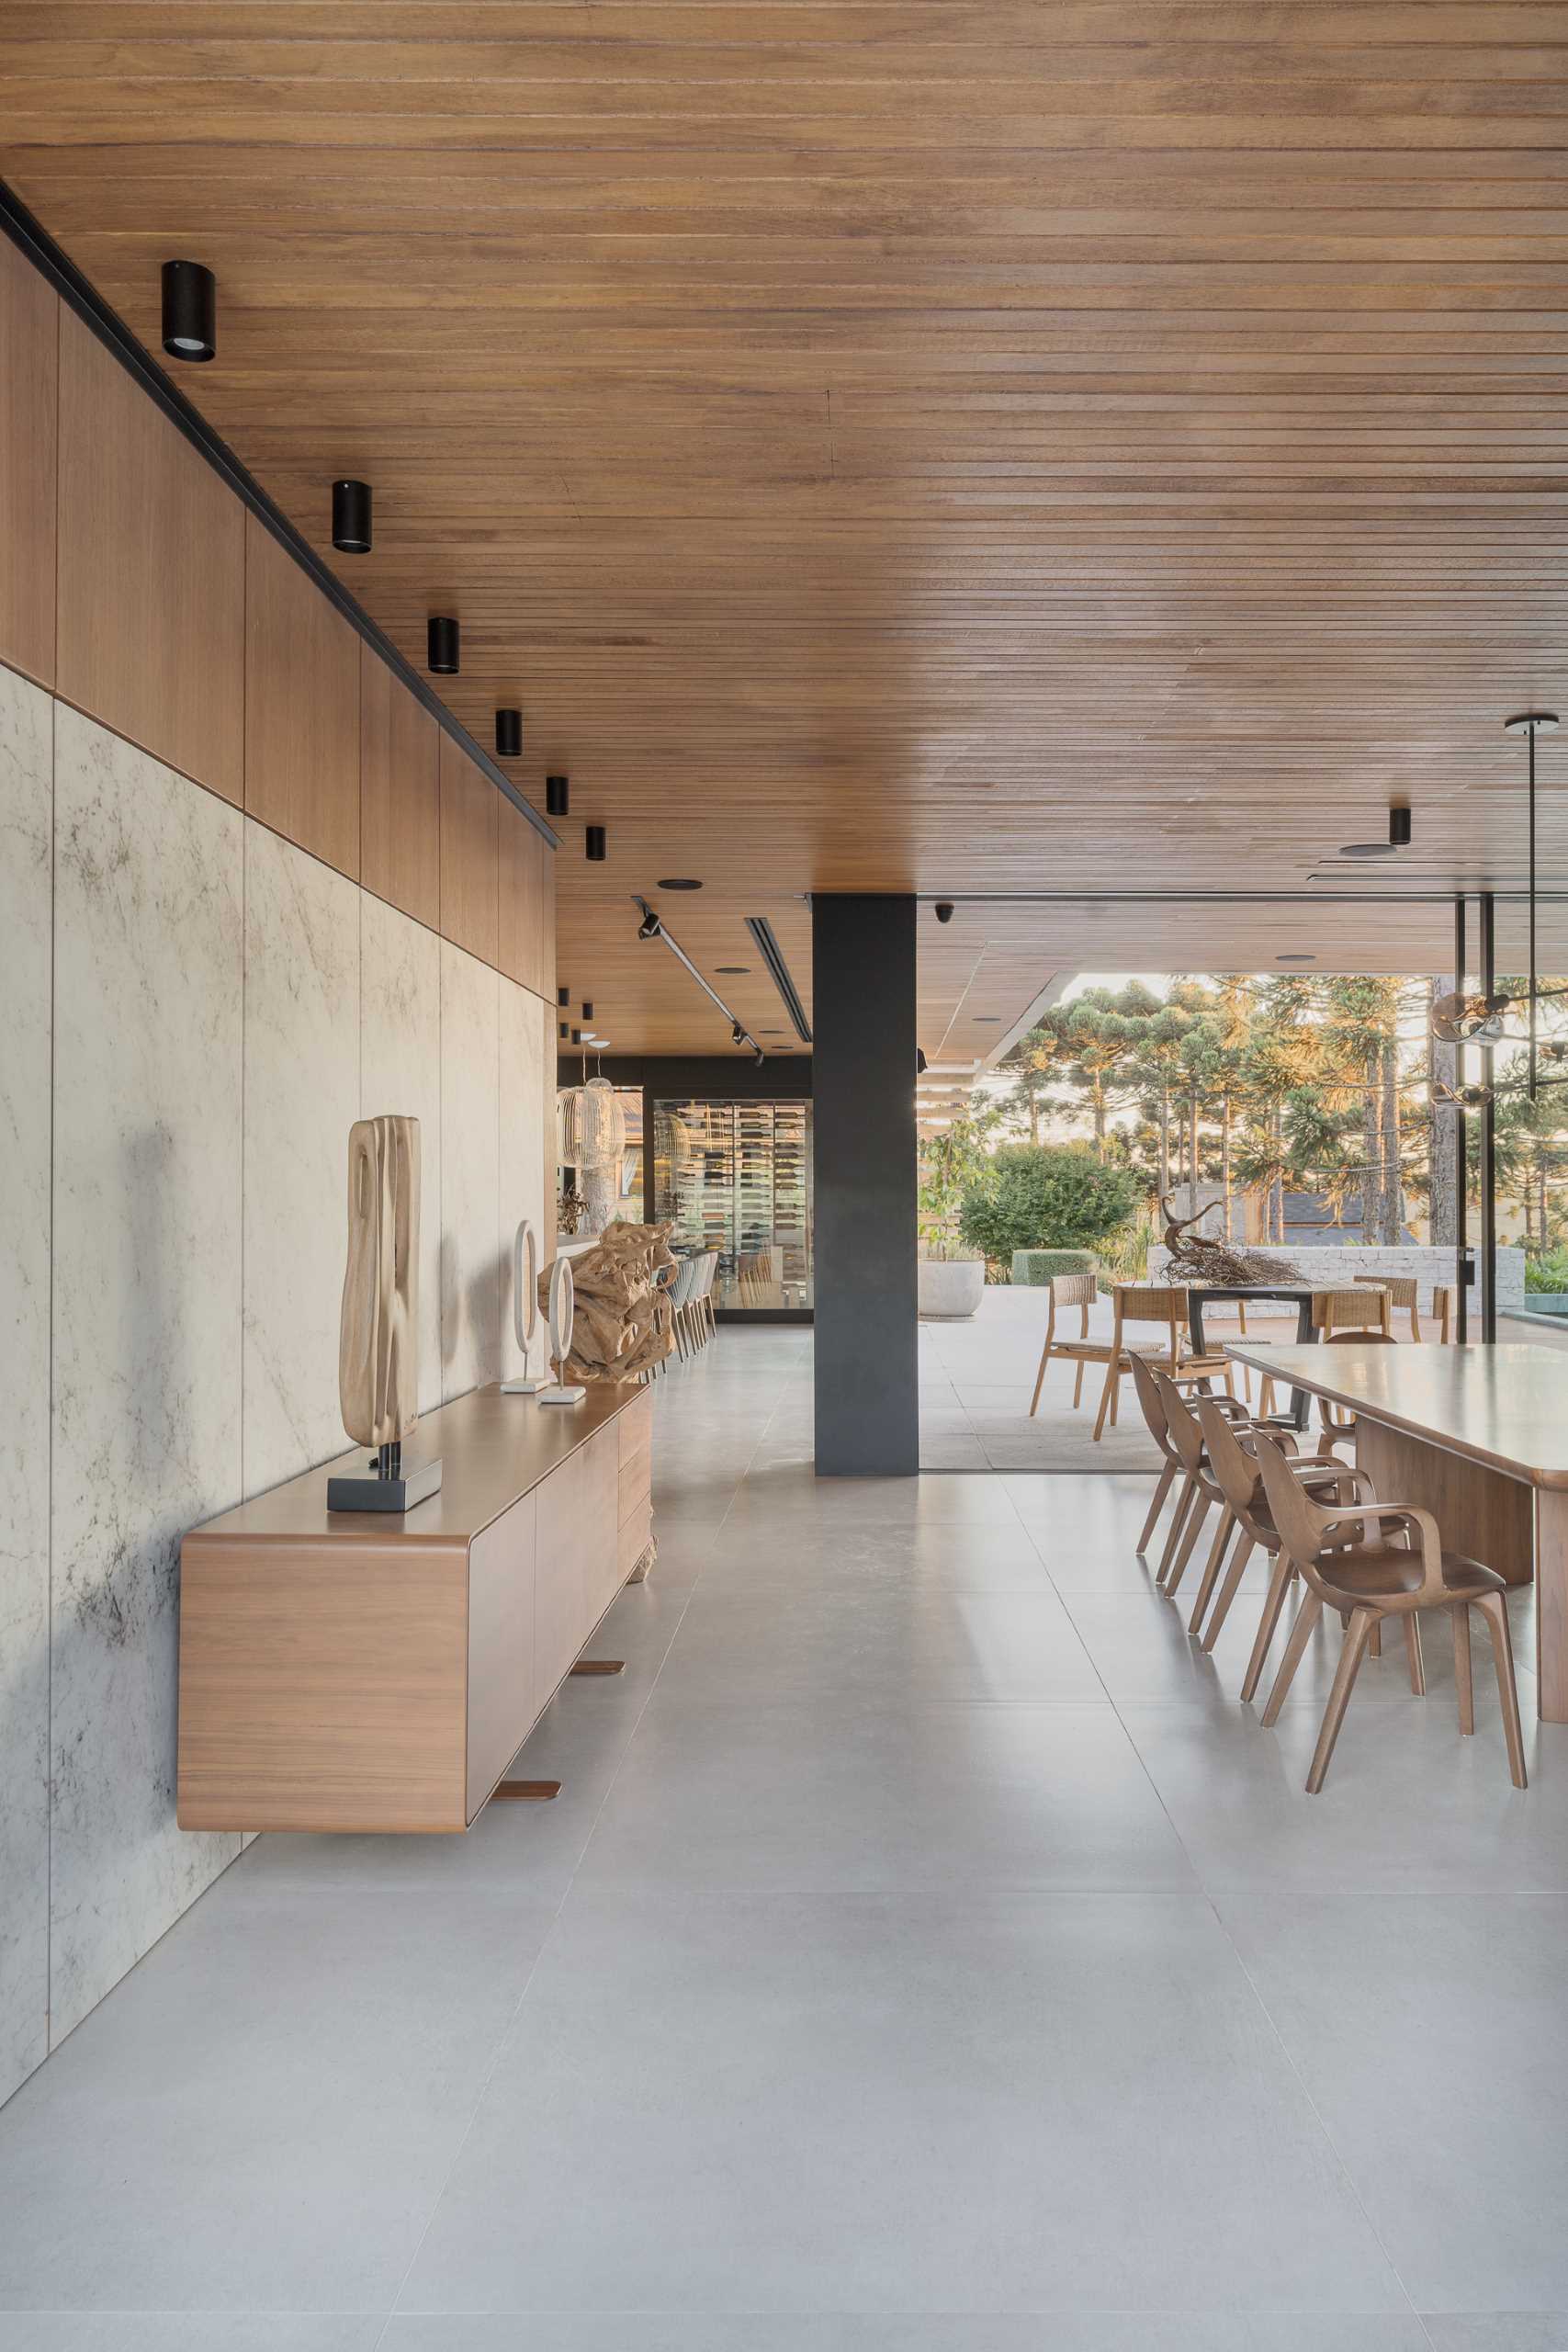 یک کابینت توکار با فروشگاه درهای شیشه ای مکمل این ناهارخوری مدرن است، در حالی که دیوار دارای پانل های سنگی و بوفه چوبی است.